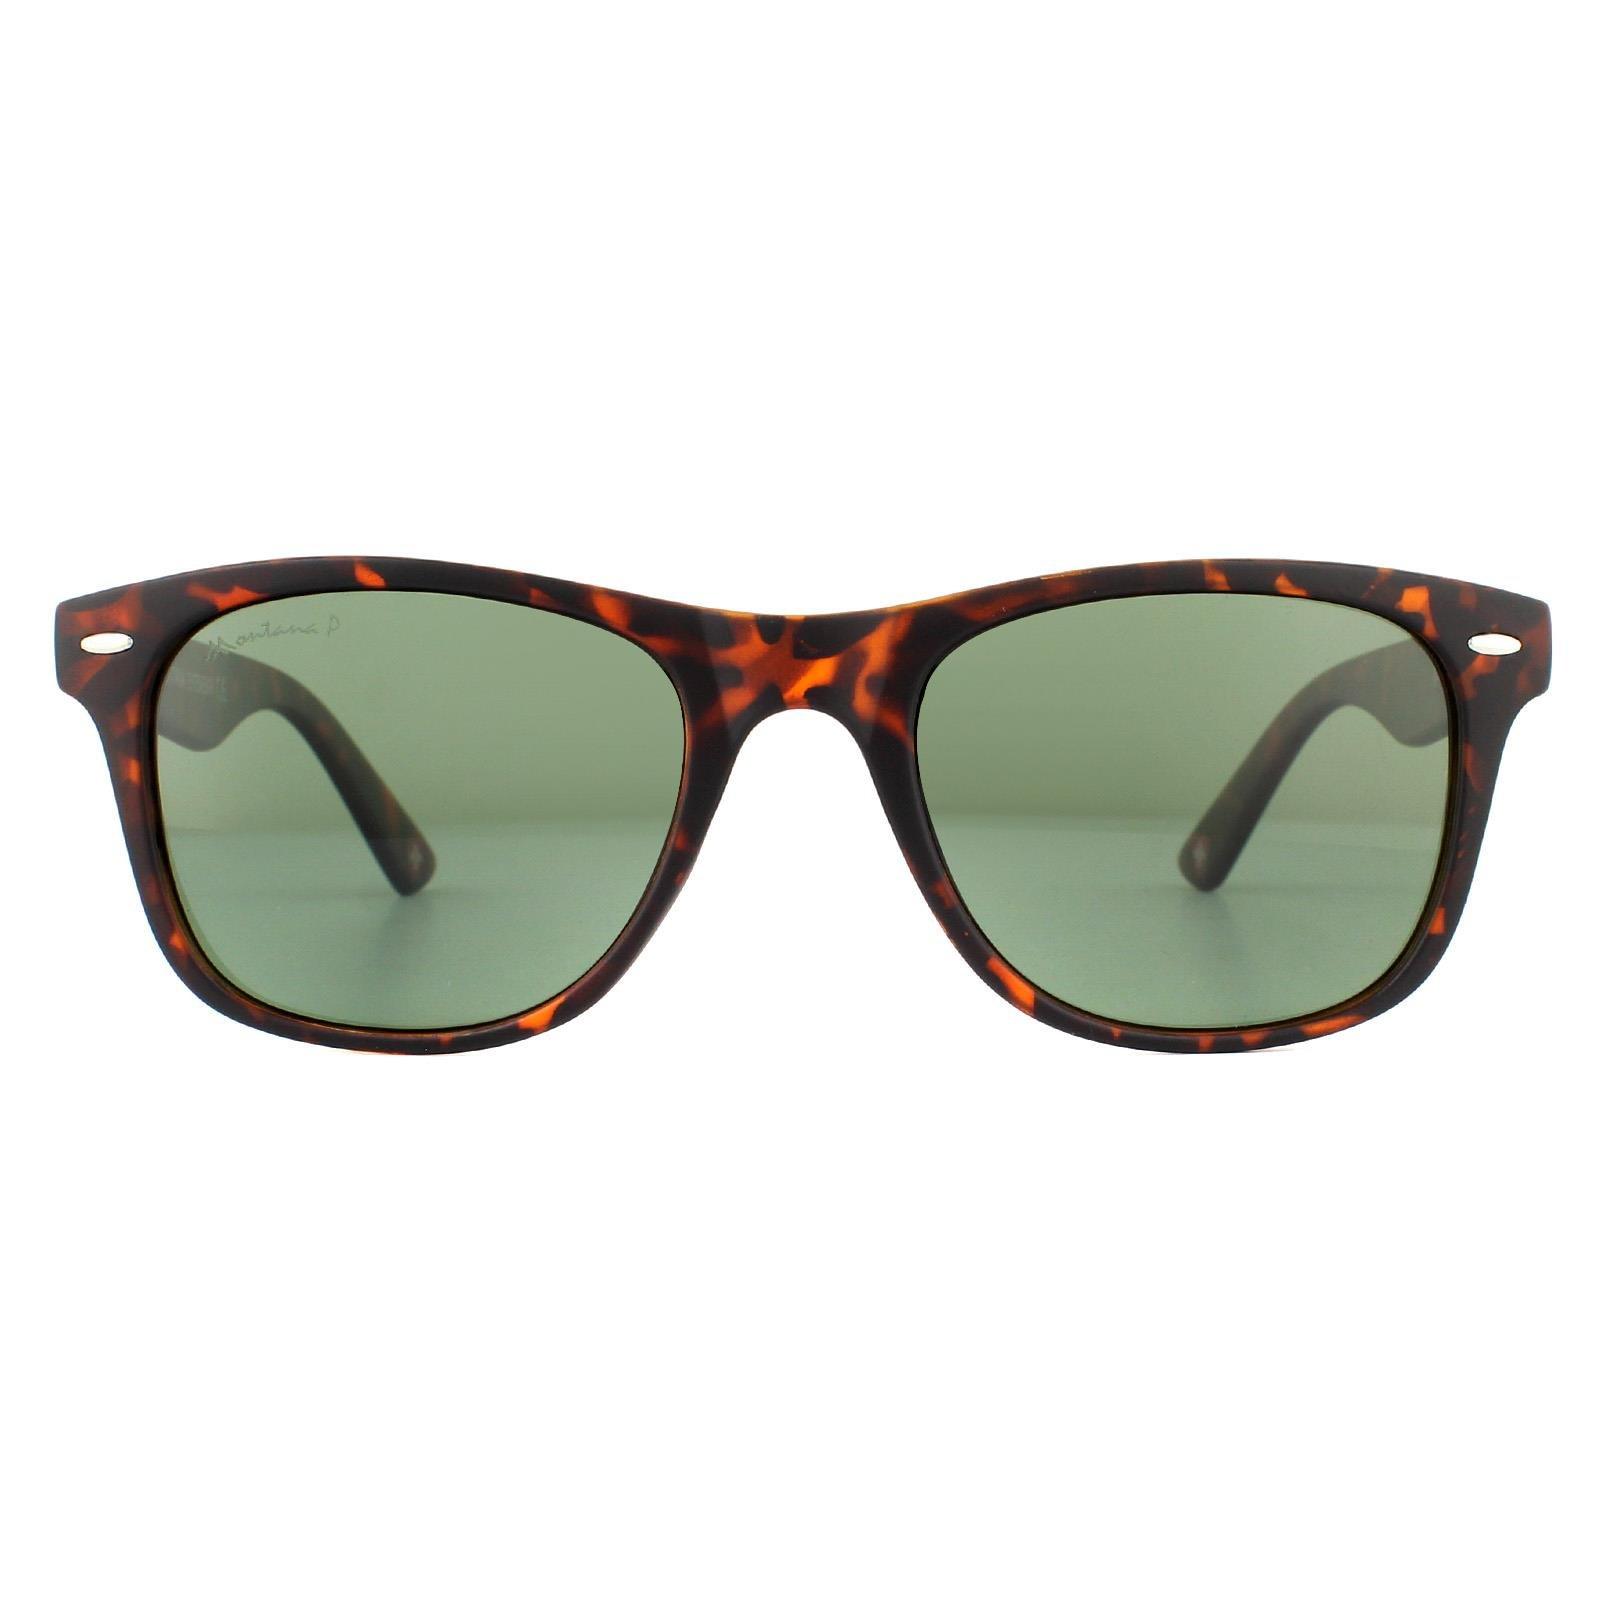 Прямоугольные матовые черепахово-коричневые зеленые поляризованные солнцезащитные очки Rubbertouch G15 montana, коричневый